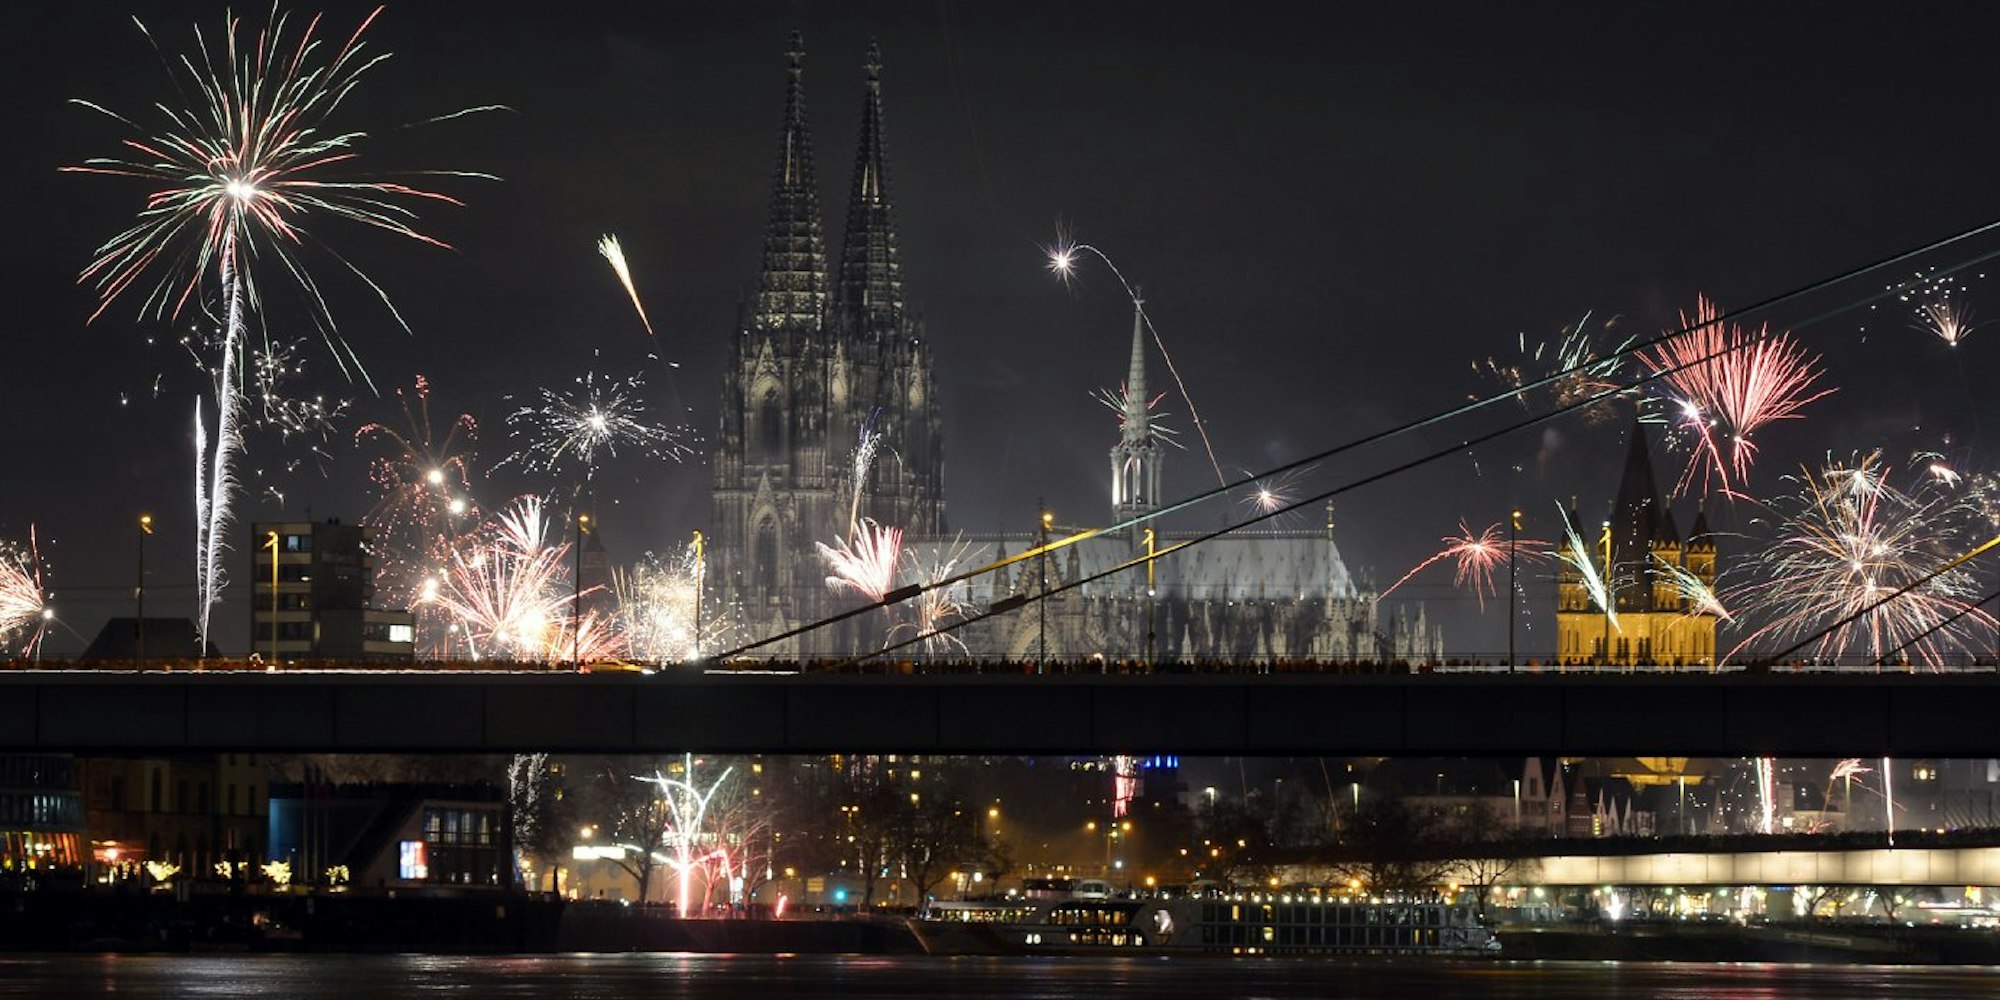 Der Kölner Dom im Feuerwerkregen, wenn die Kölner das neue Jahr begrüßen.